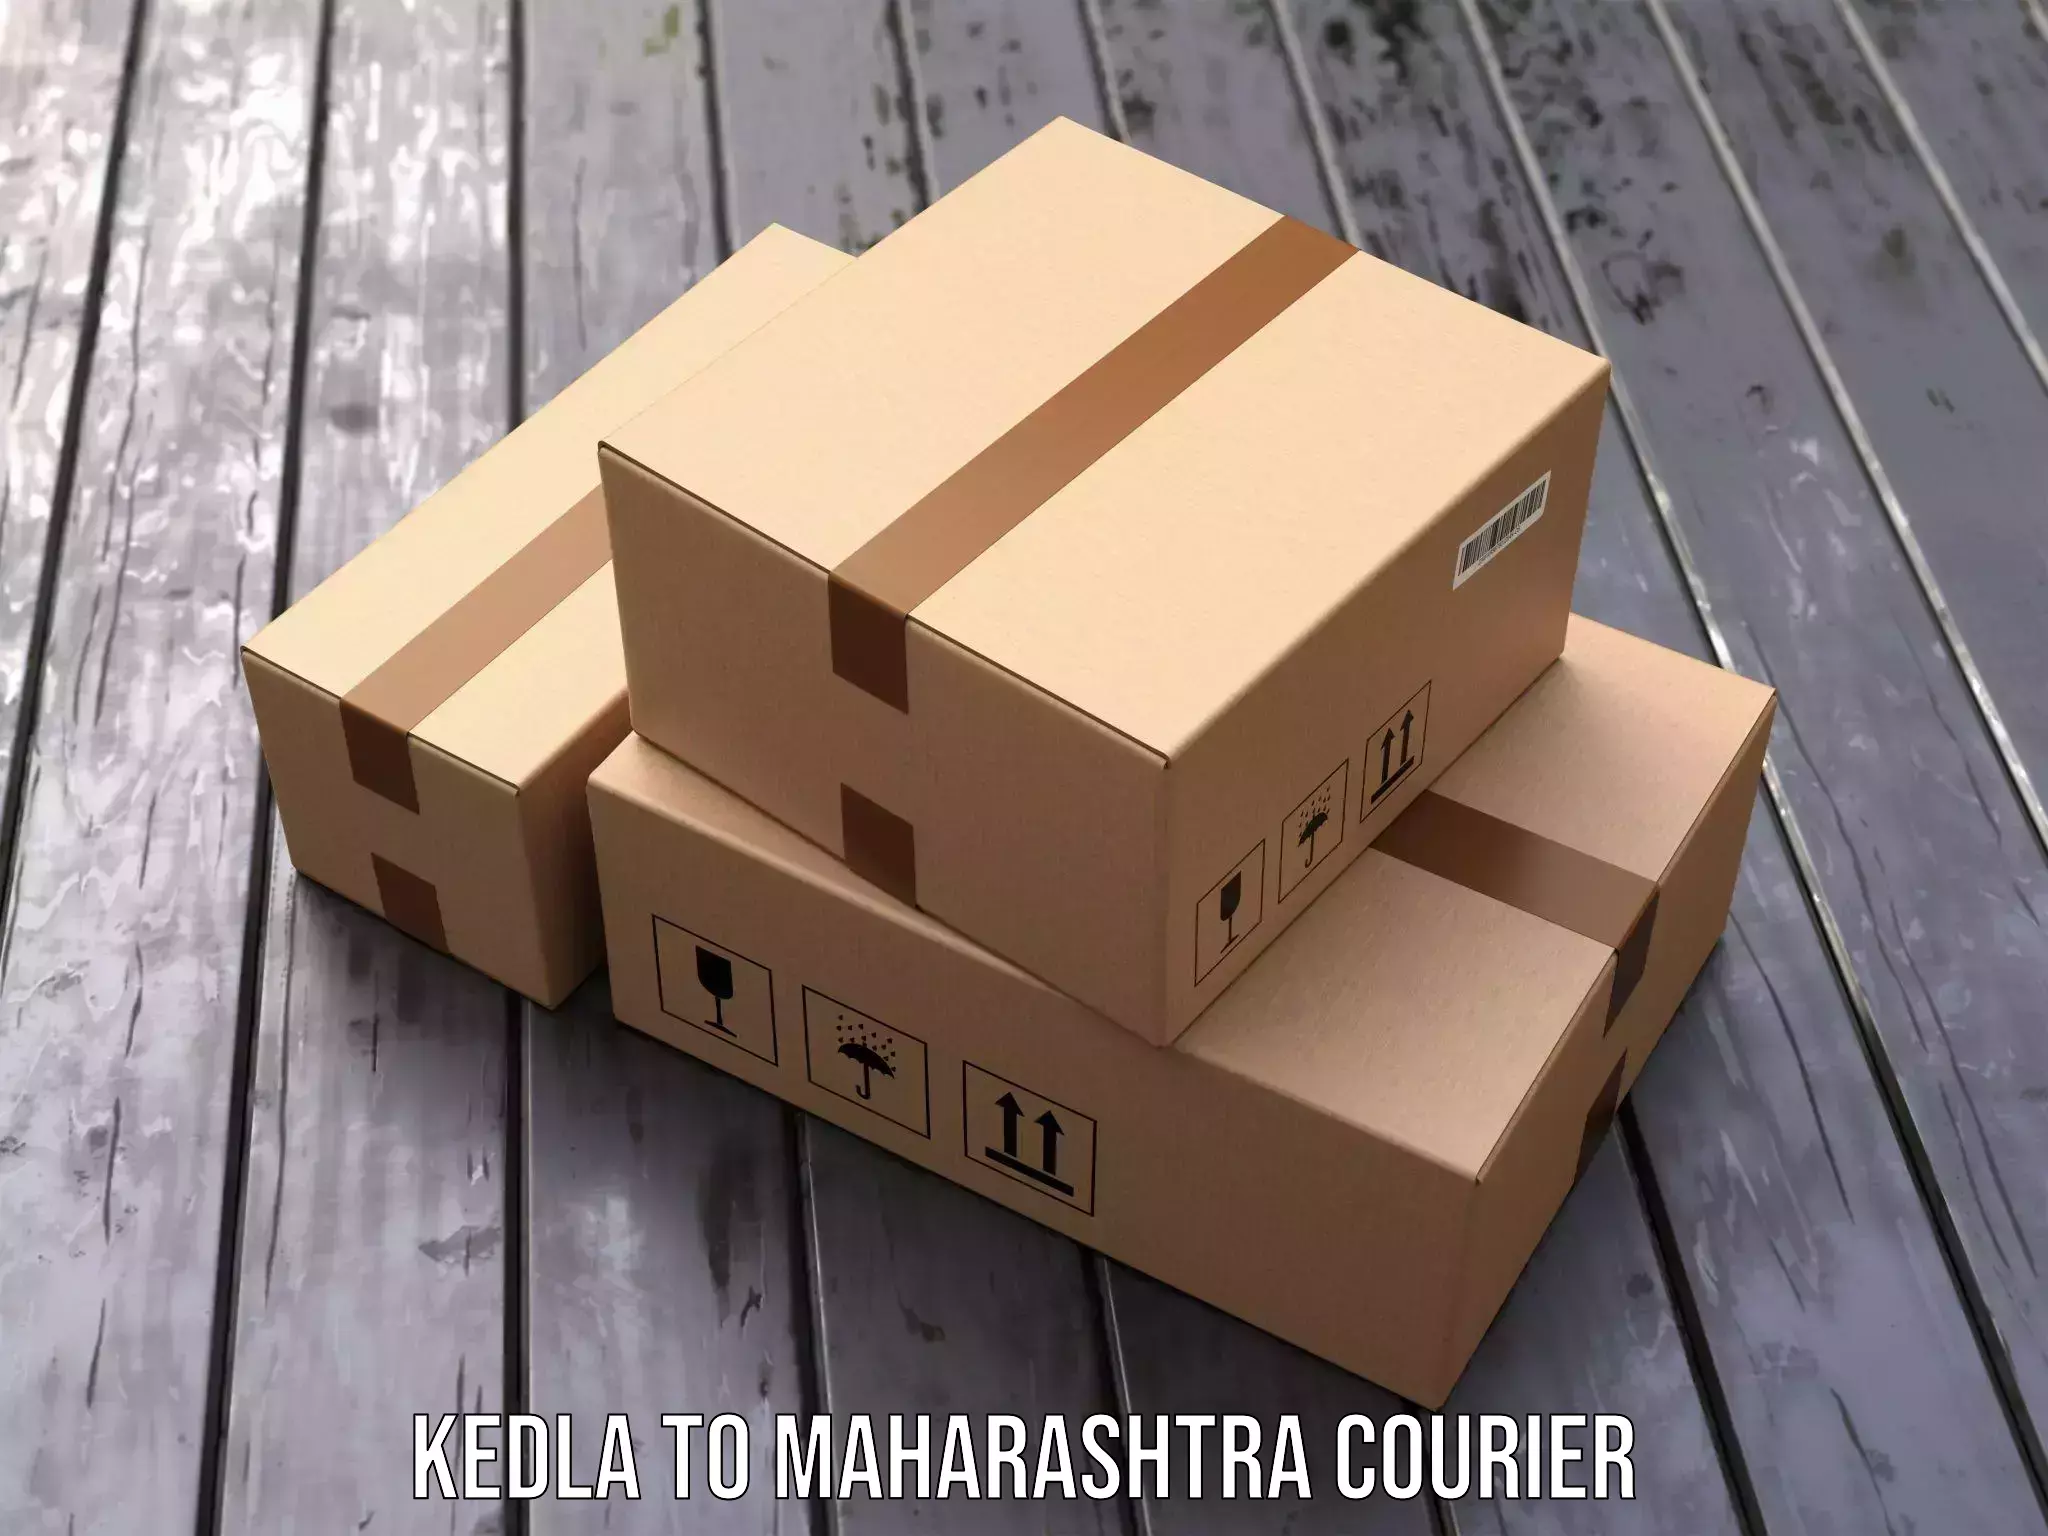 Courier service efficiency Kedla to Maharashtra